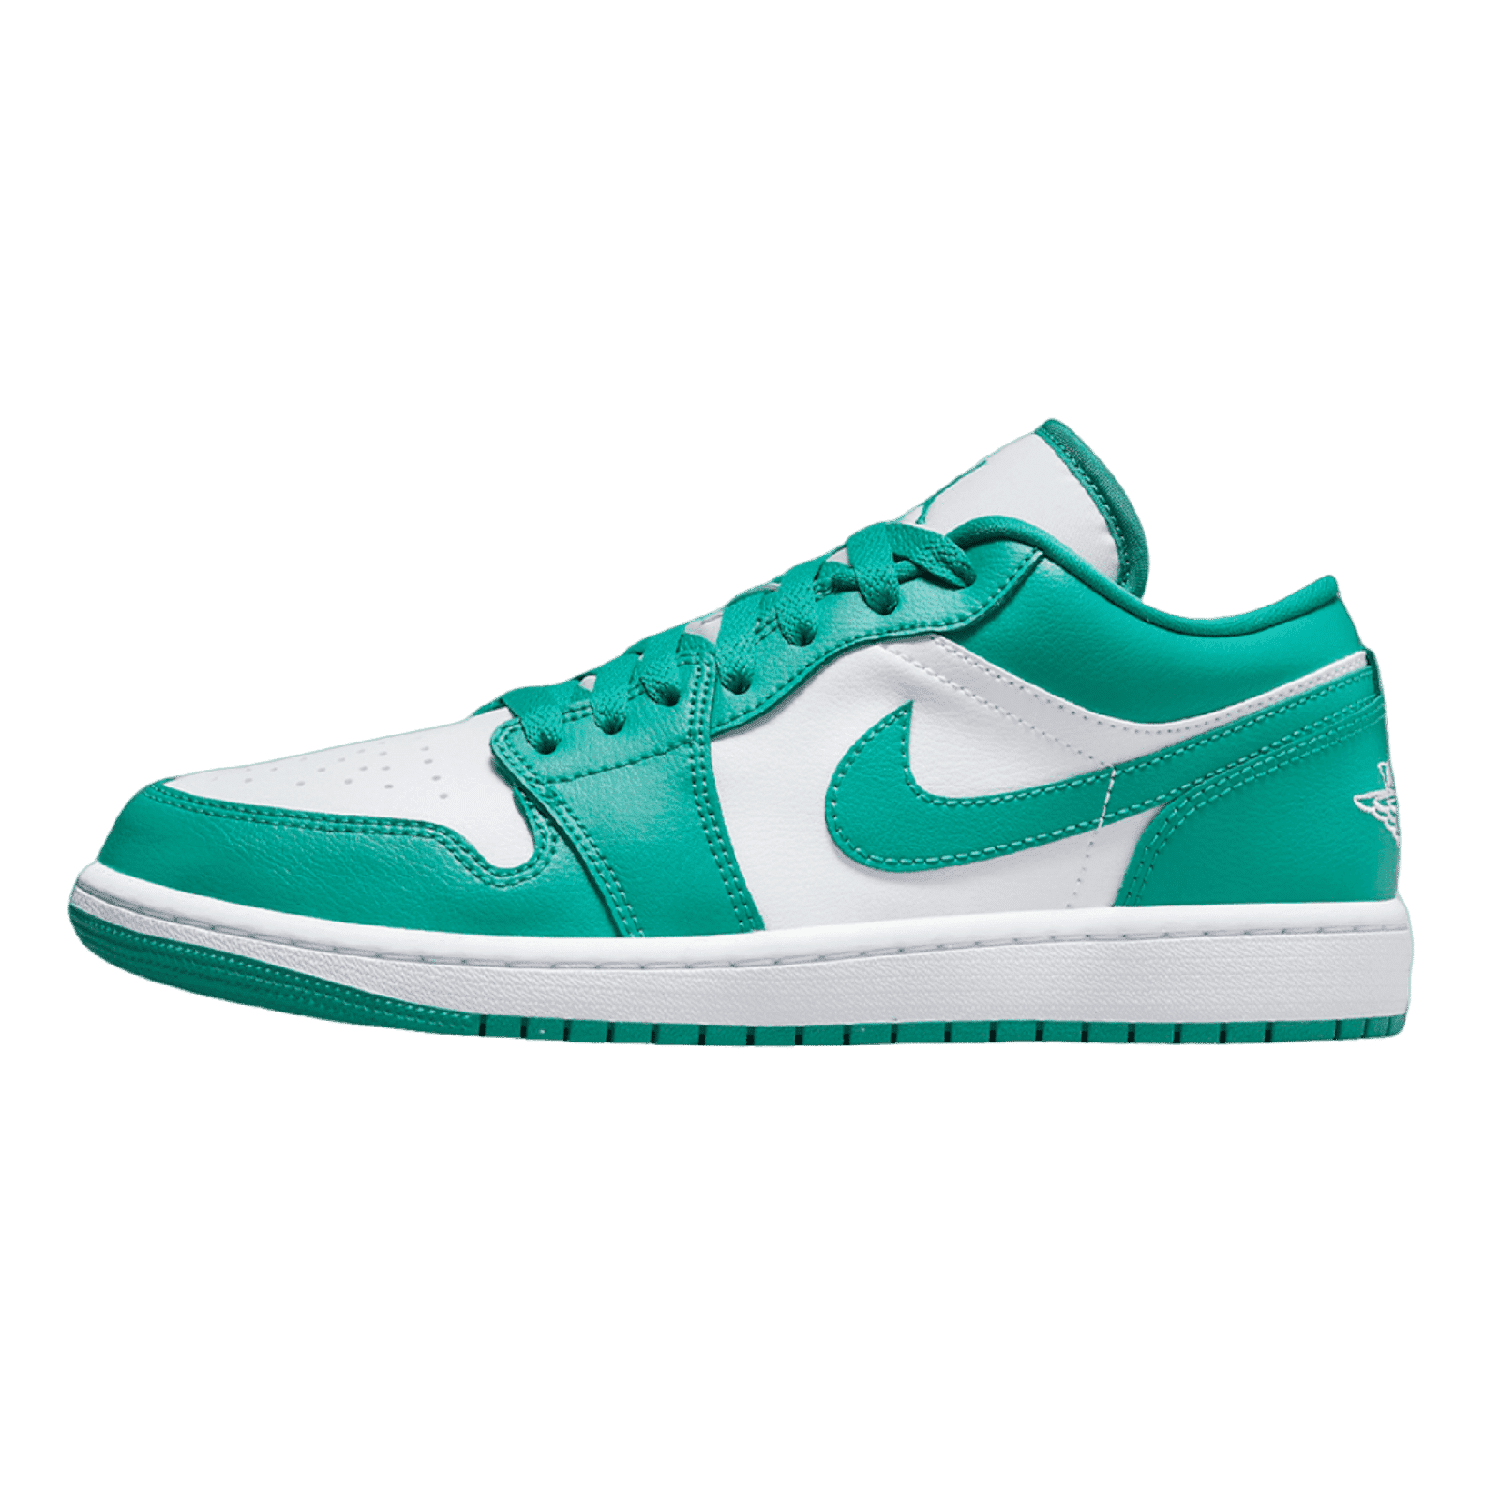 Air Jordan 1 Low New Emerald (W) - Sneakerterritory; Sneaker Territory